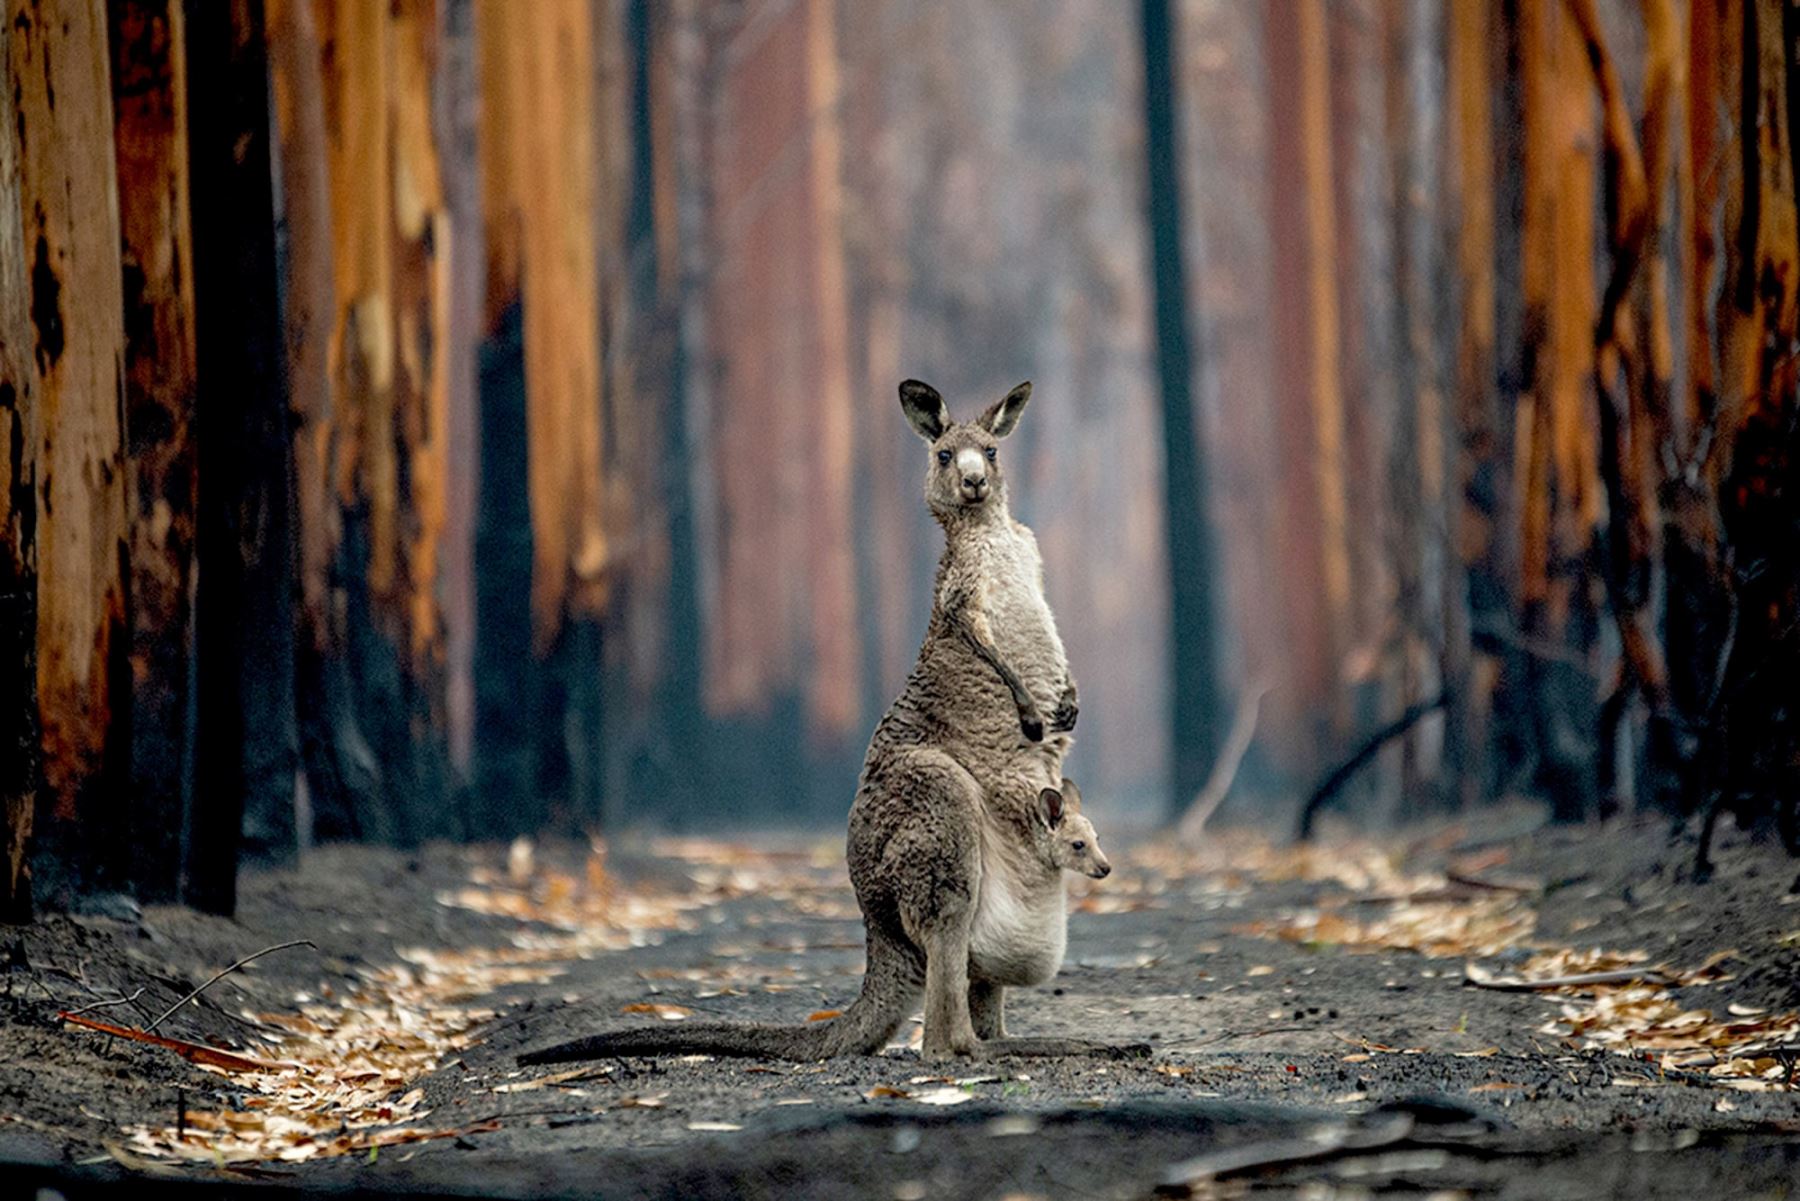 La fotógrafa Jo-Anne McArthur de Canadá viajó a Australia a principios de 2020 para documentar las historias de animales afectados por devastadores incendios forestales, como este canguro gris y su joey.Jo-Anne McArthur / Wildlife Photographer of the Year